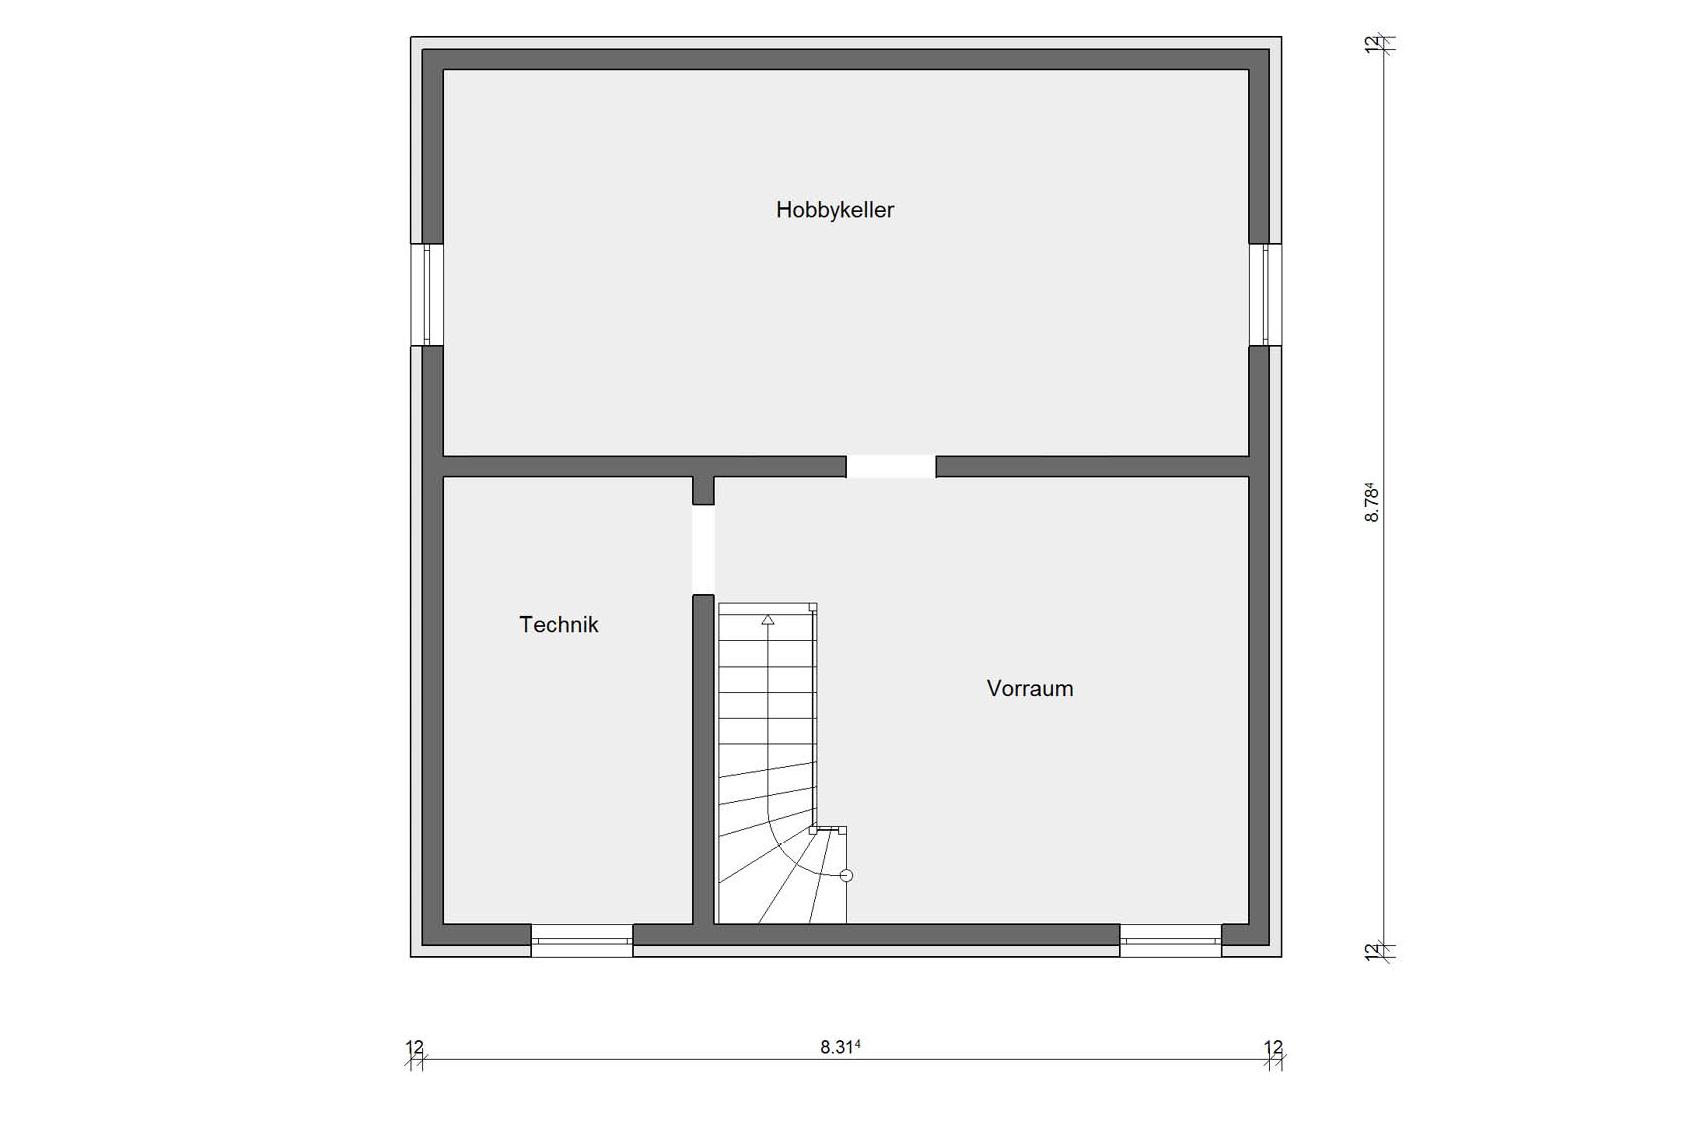 Basement floorplan E 15-127.9 Modern family house